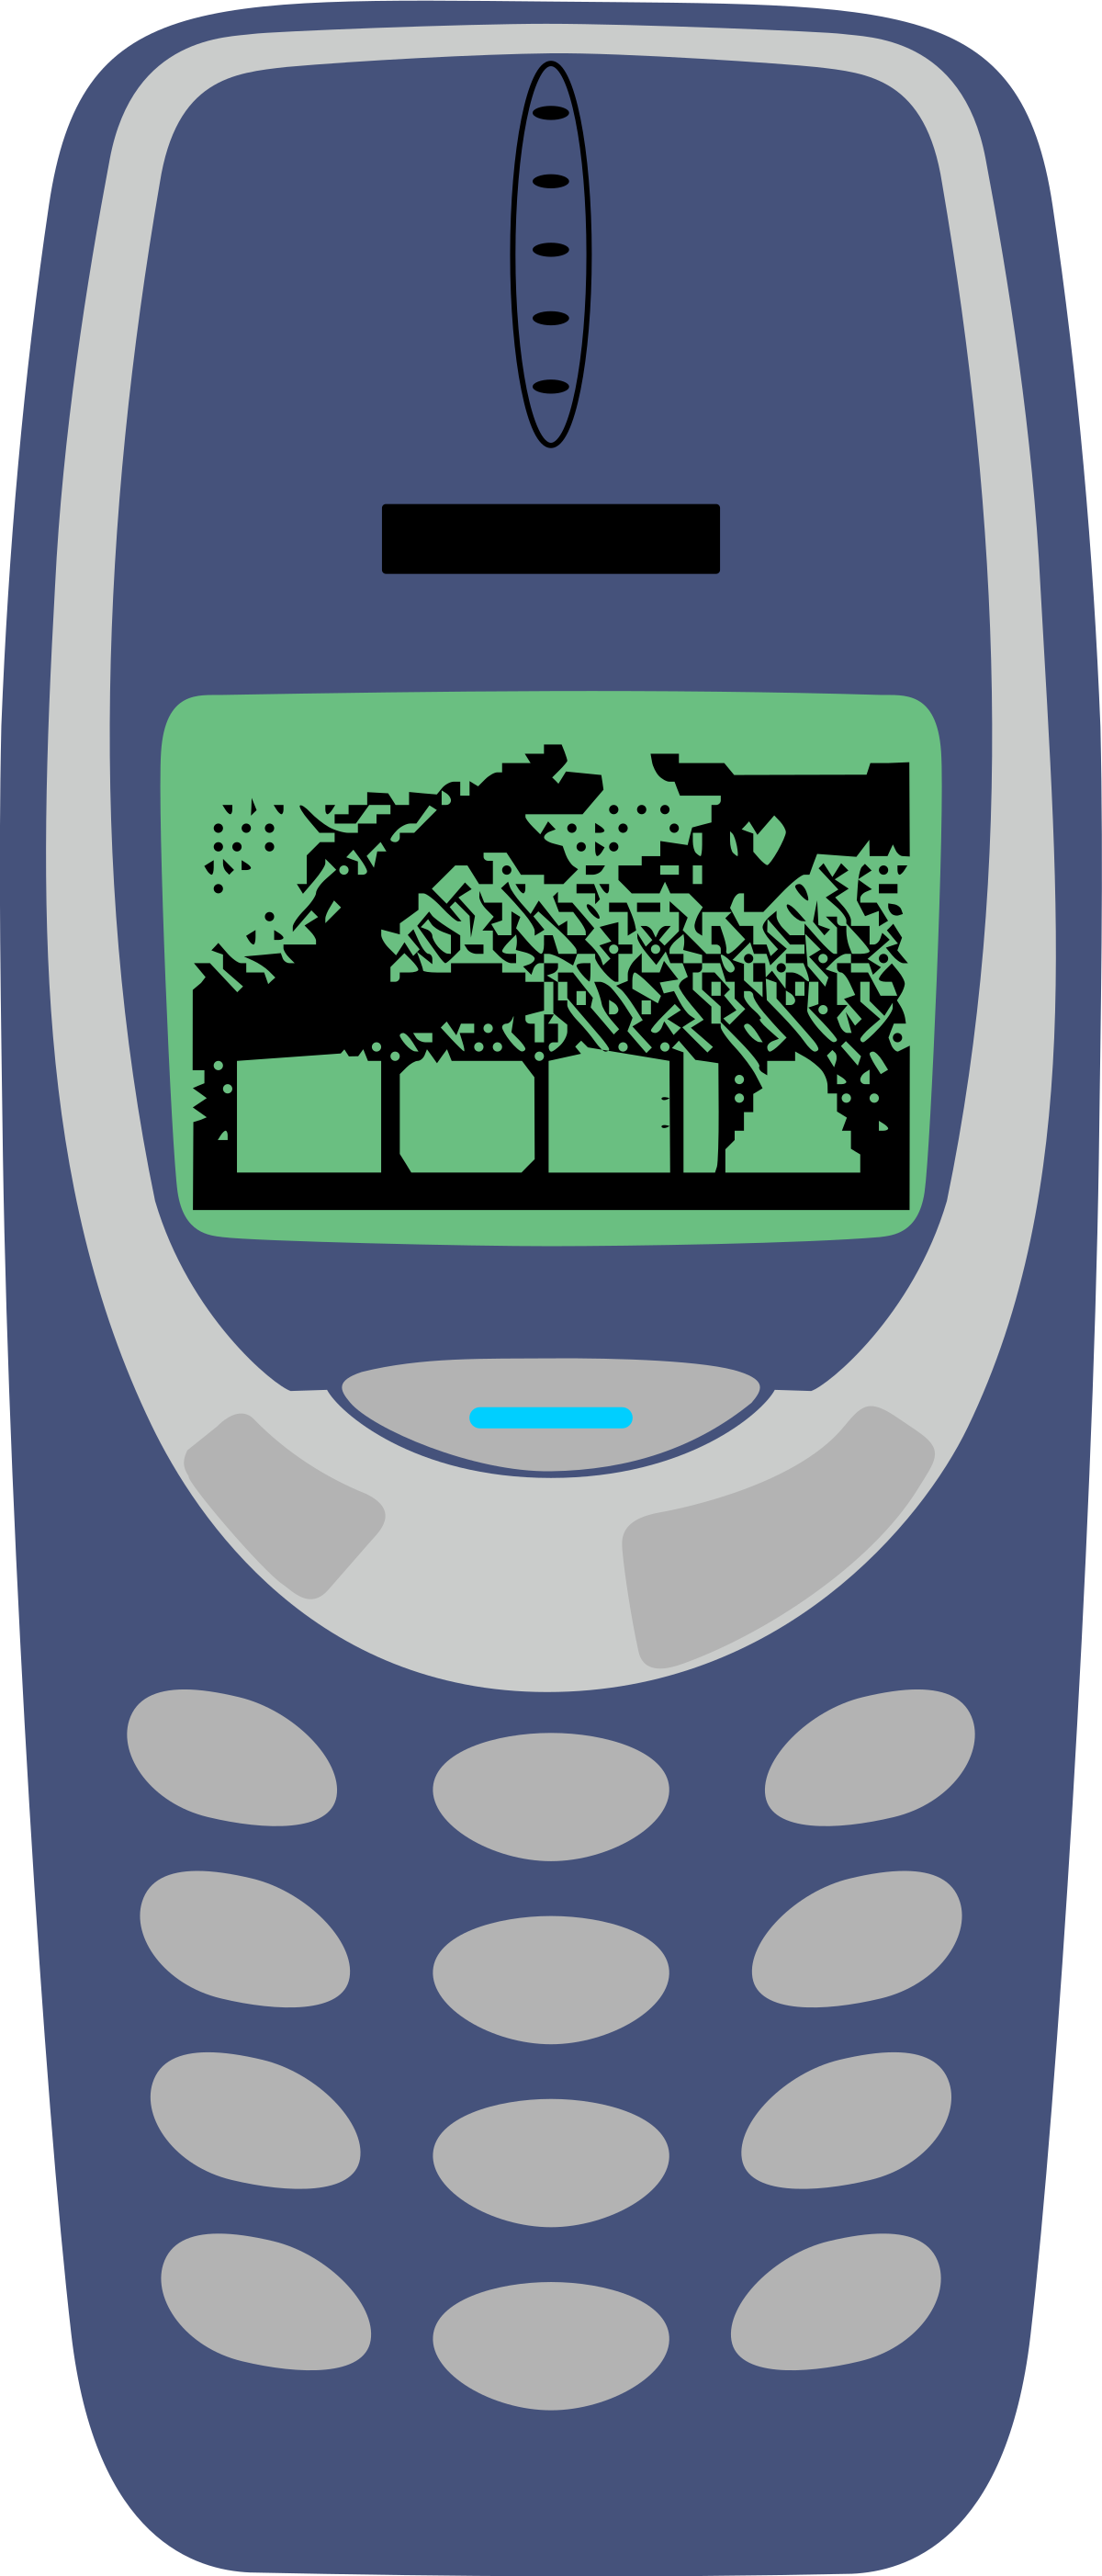 Nokia 3310, Nokia Wiki